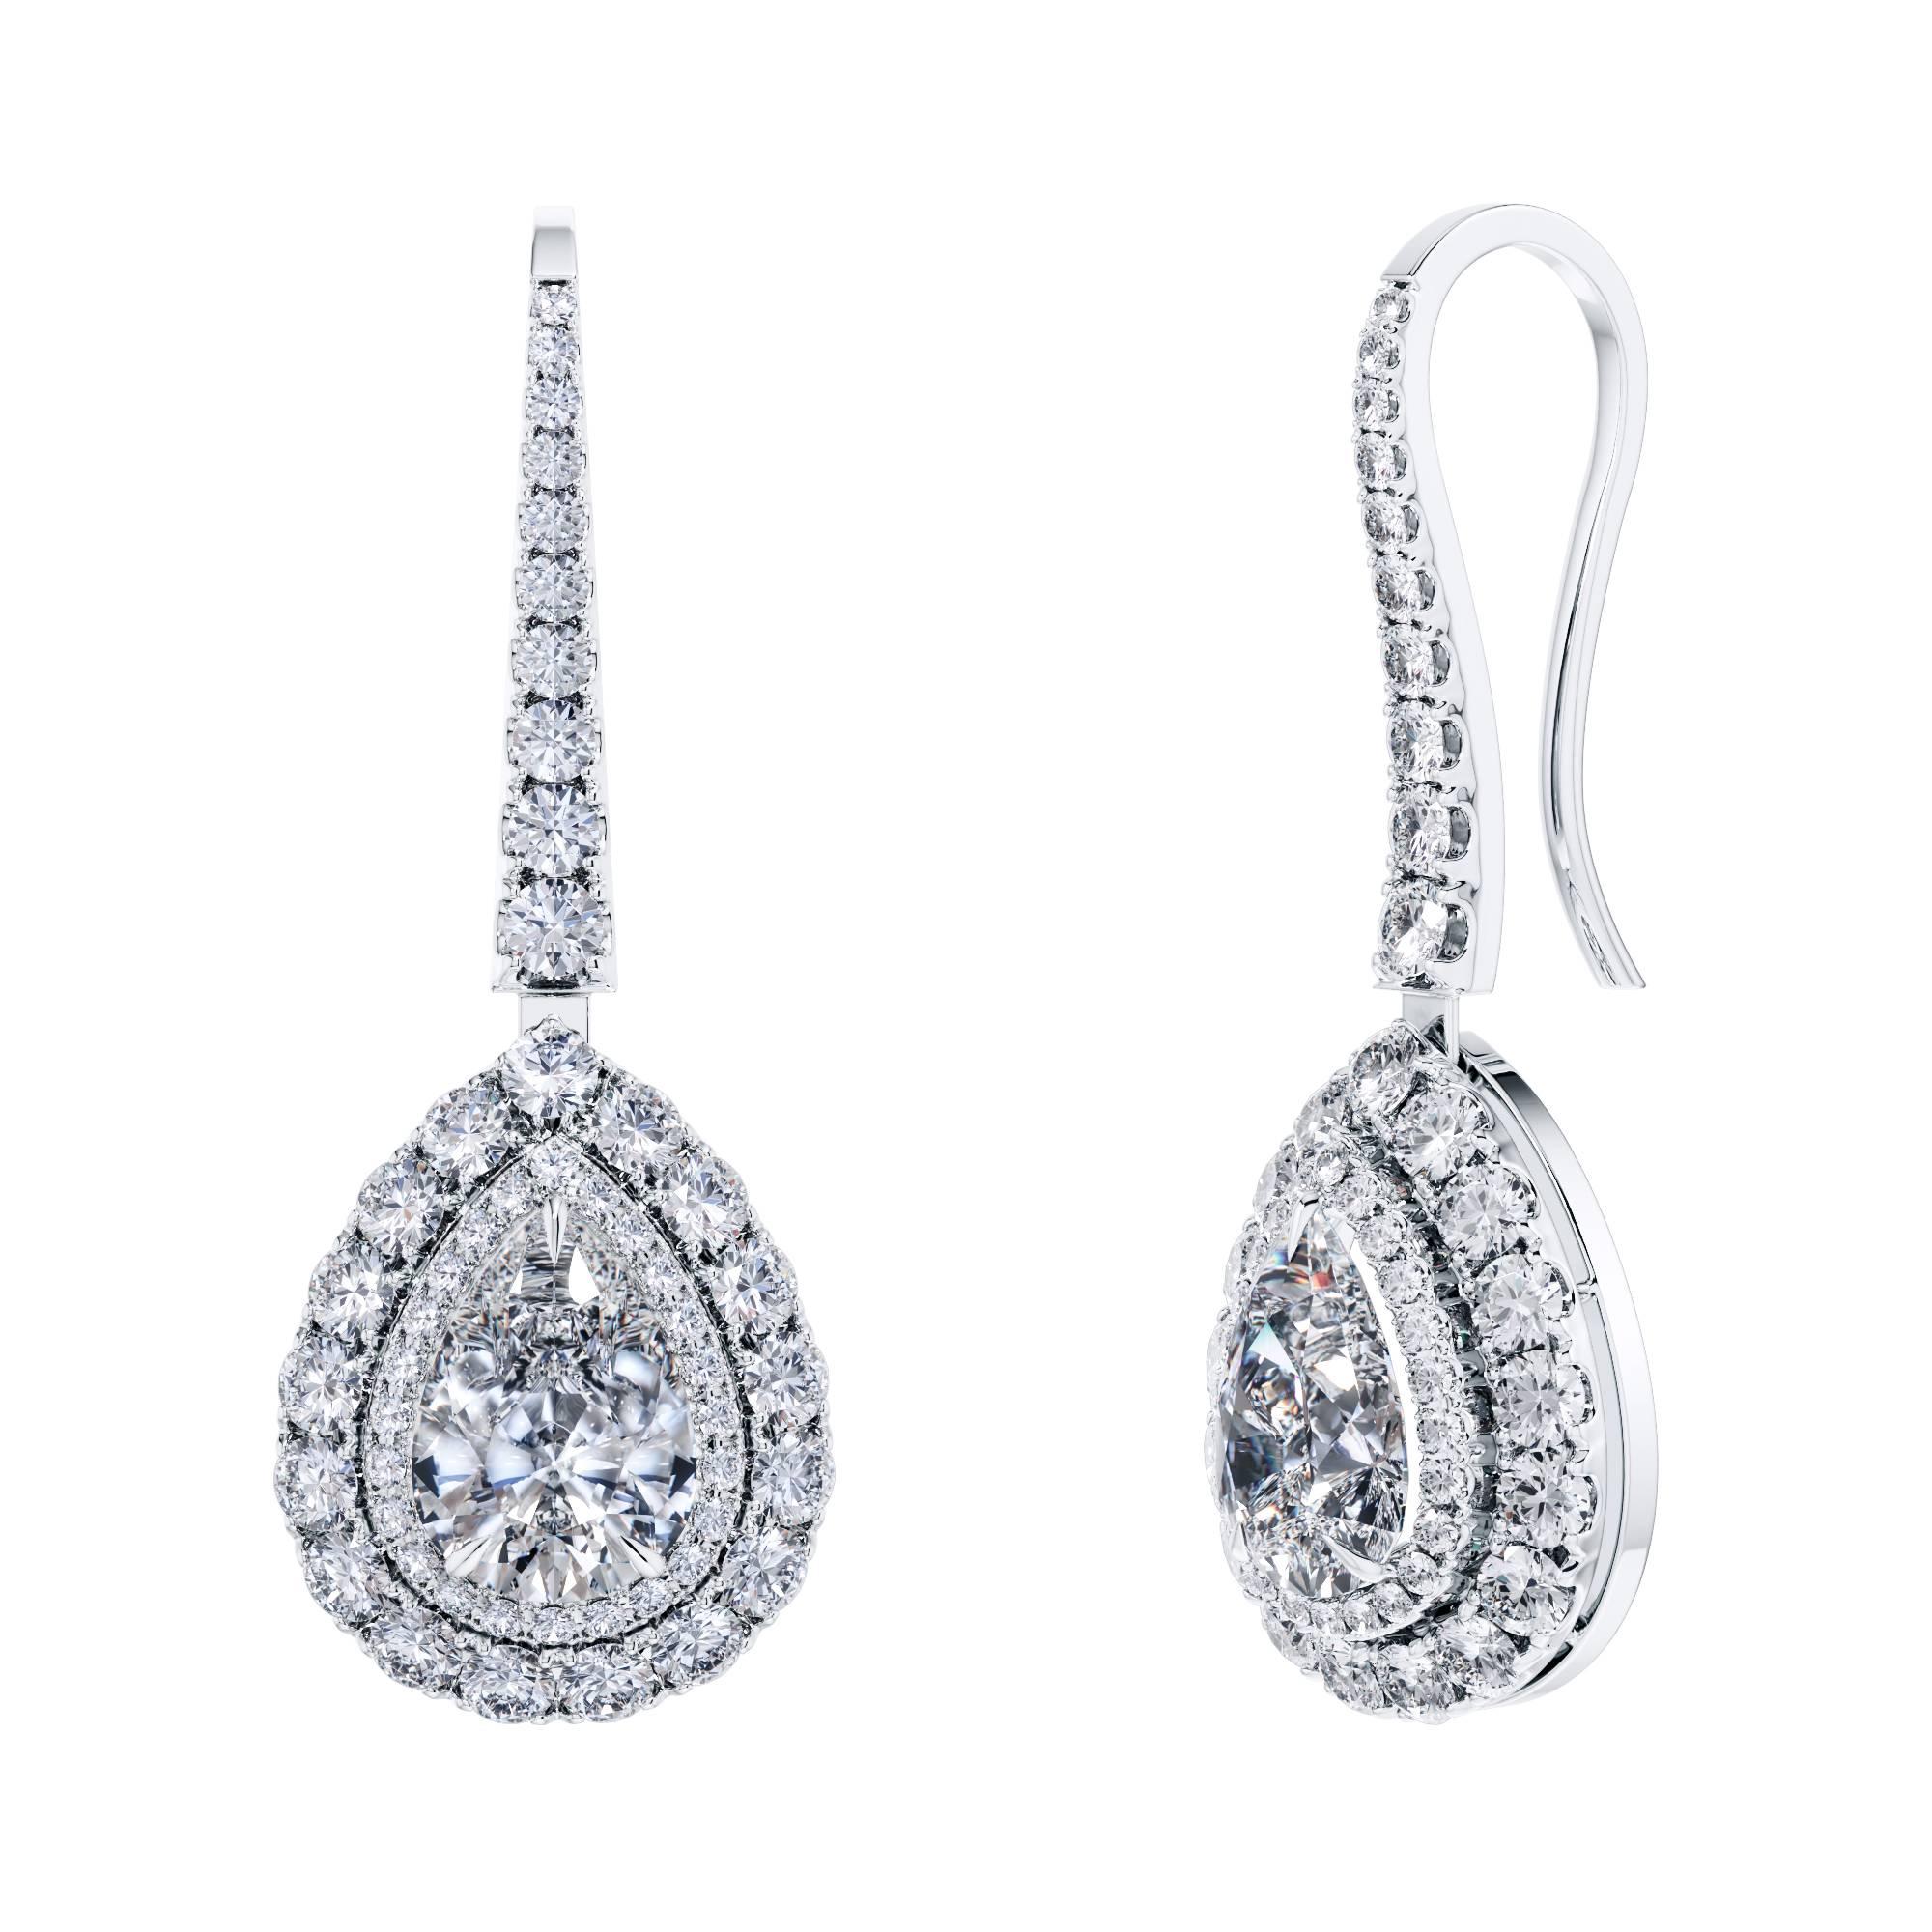 Platin-Ohrringe mit GIA-zertifiziertem 3,45 Karat rundem Brillant-Diamant-Tropfen